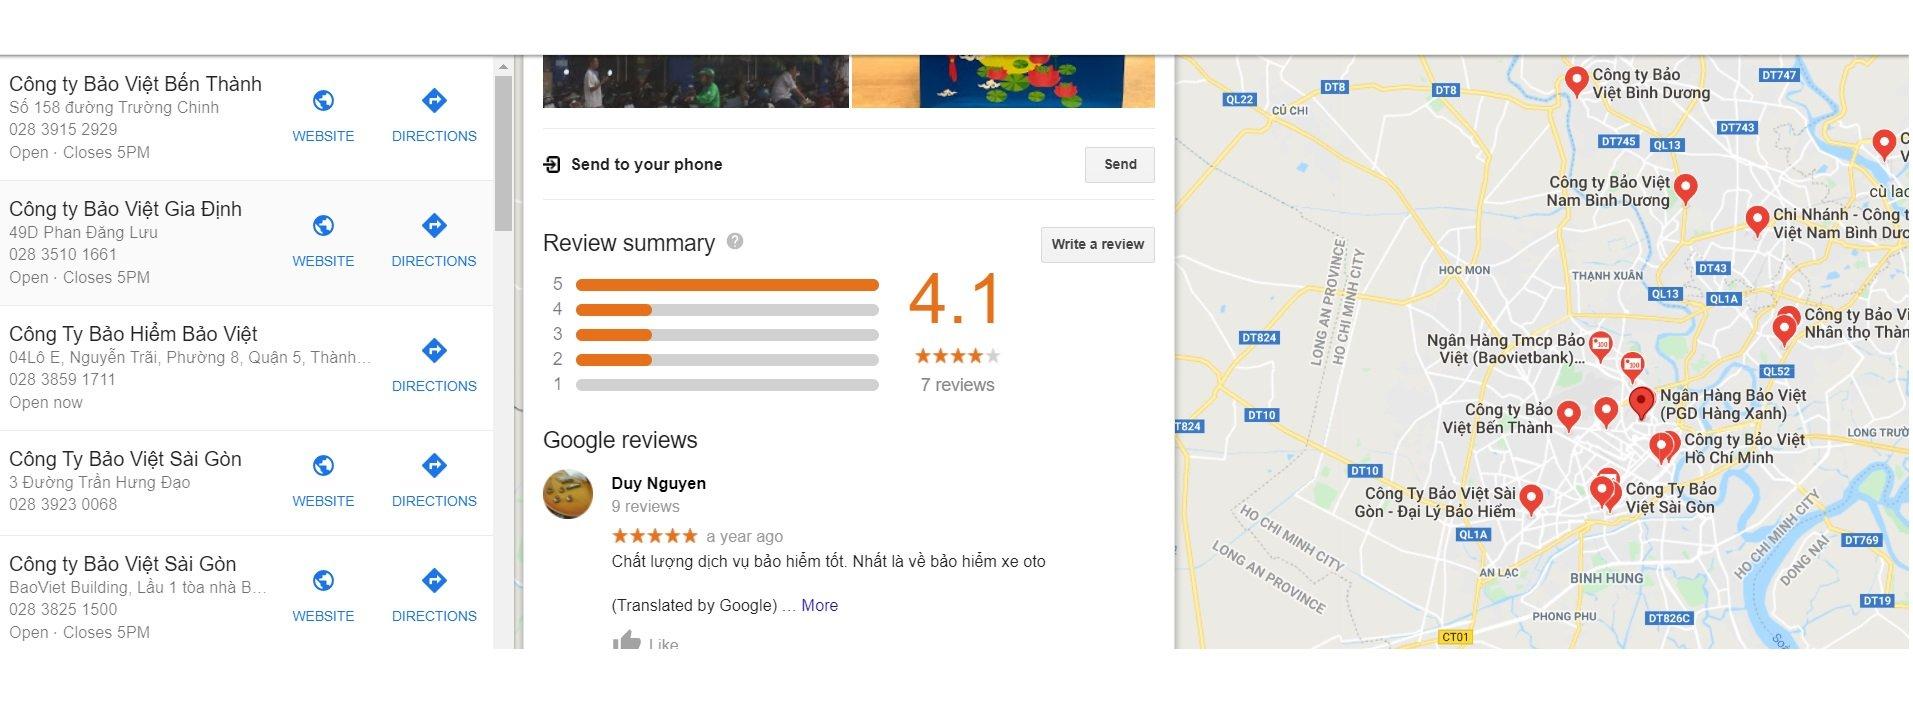 Đánh giá của khách hàng về công ty Bảo Việt trên Google Maps. (Nguồn: BlogAnChoi)